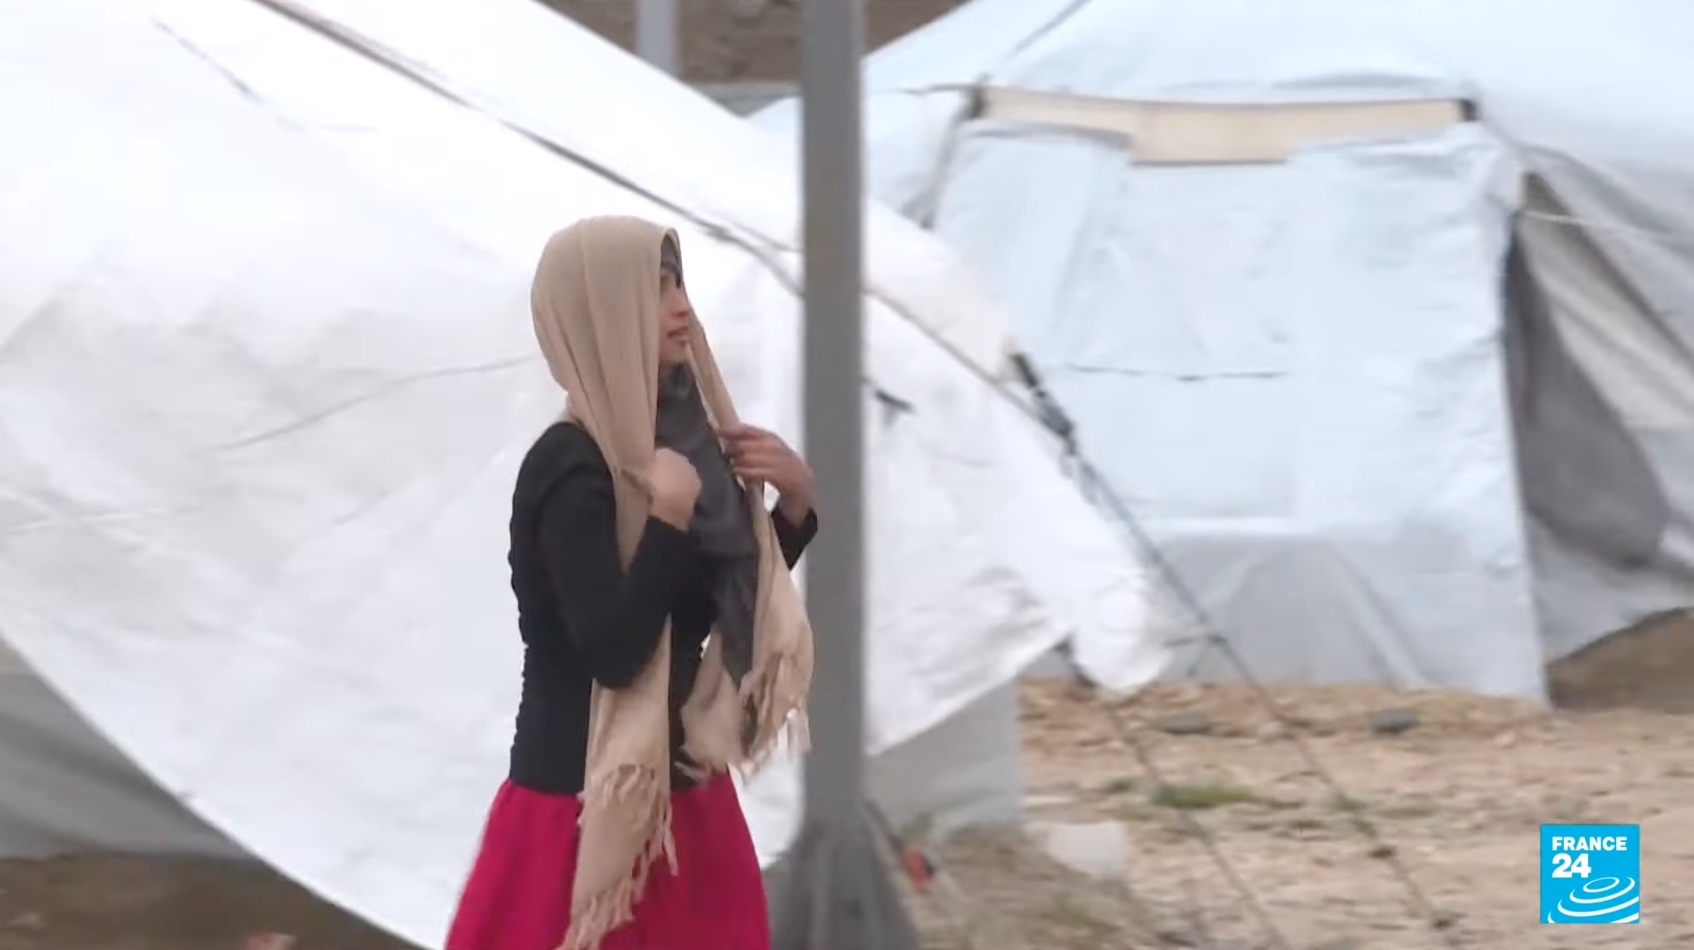 Franciaország hazatelepített több mint 40 nőt és gyereket, akiket szíriai dzsihádista táborokban tartottak fogva